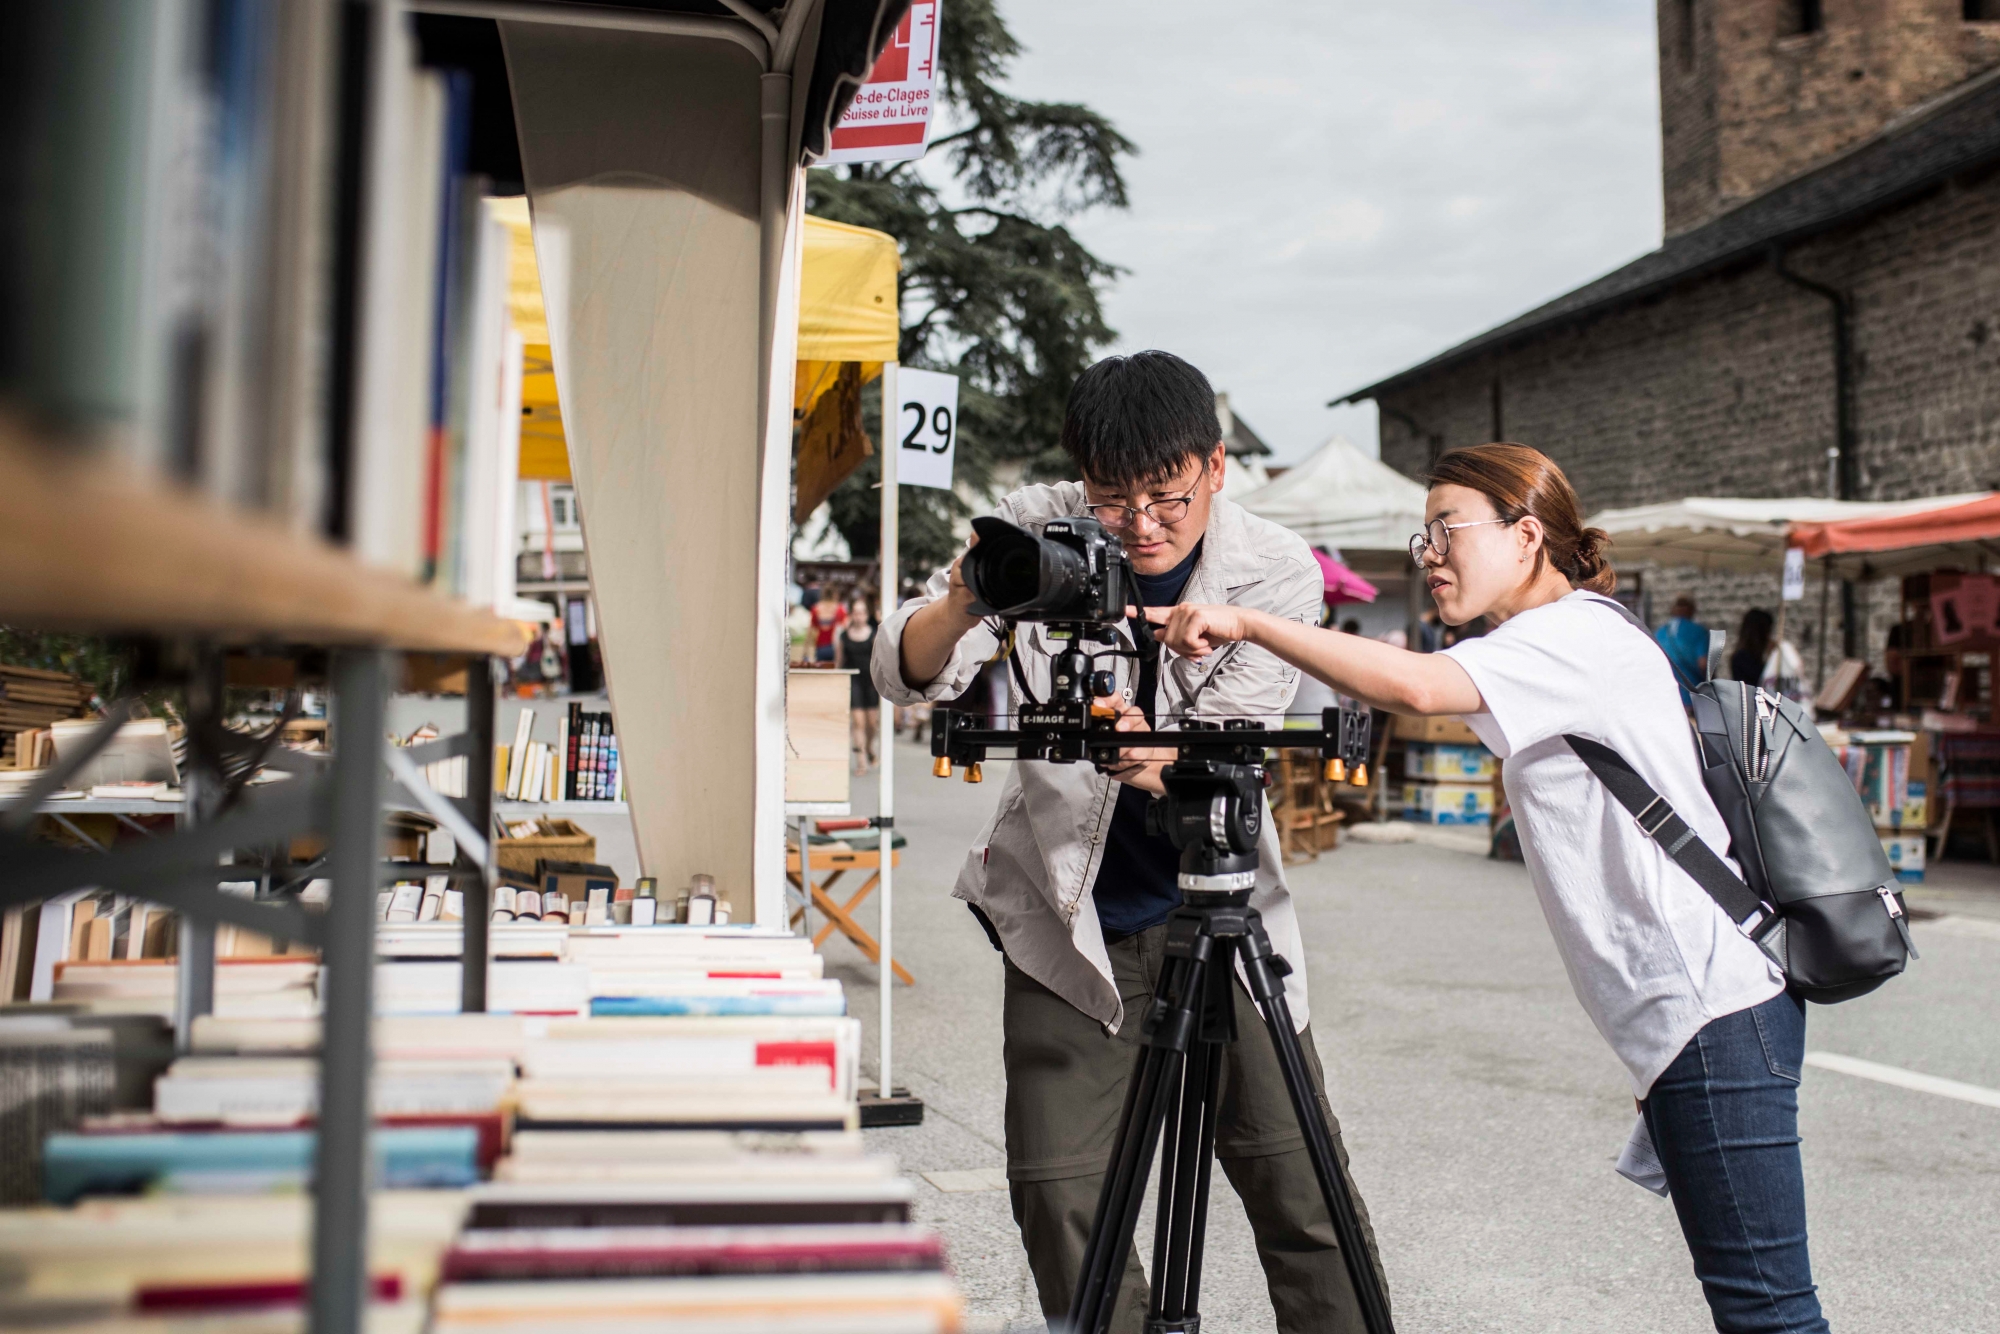 Edition 2017 de la fêté du livre de Saint Pierre de Clage. Deux journalistes coréens effectuent un reportage sur les village du livres en Europe et font étape en Valais. Portrait de Siyeon Byun (productrice) et Jeonghoon Jang  (cameraman).